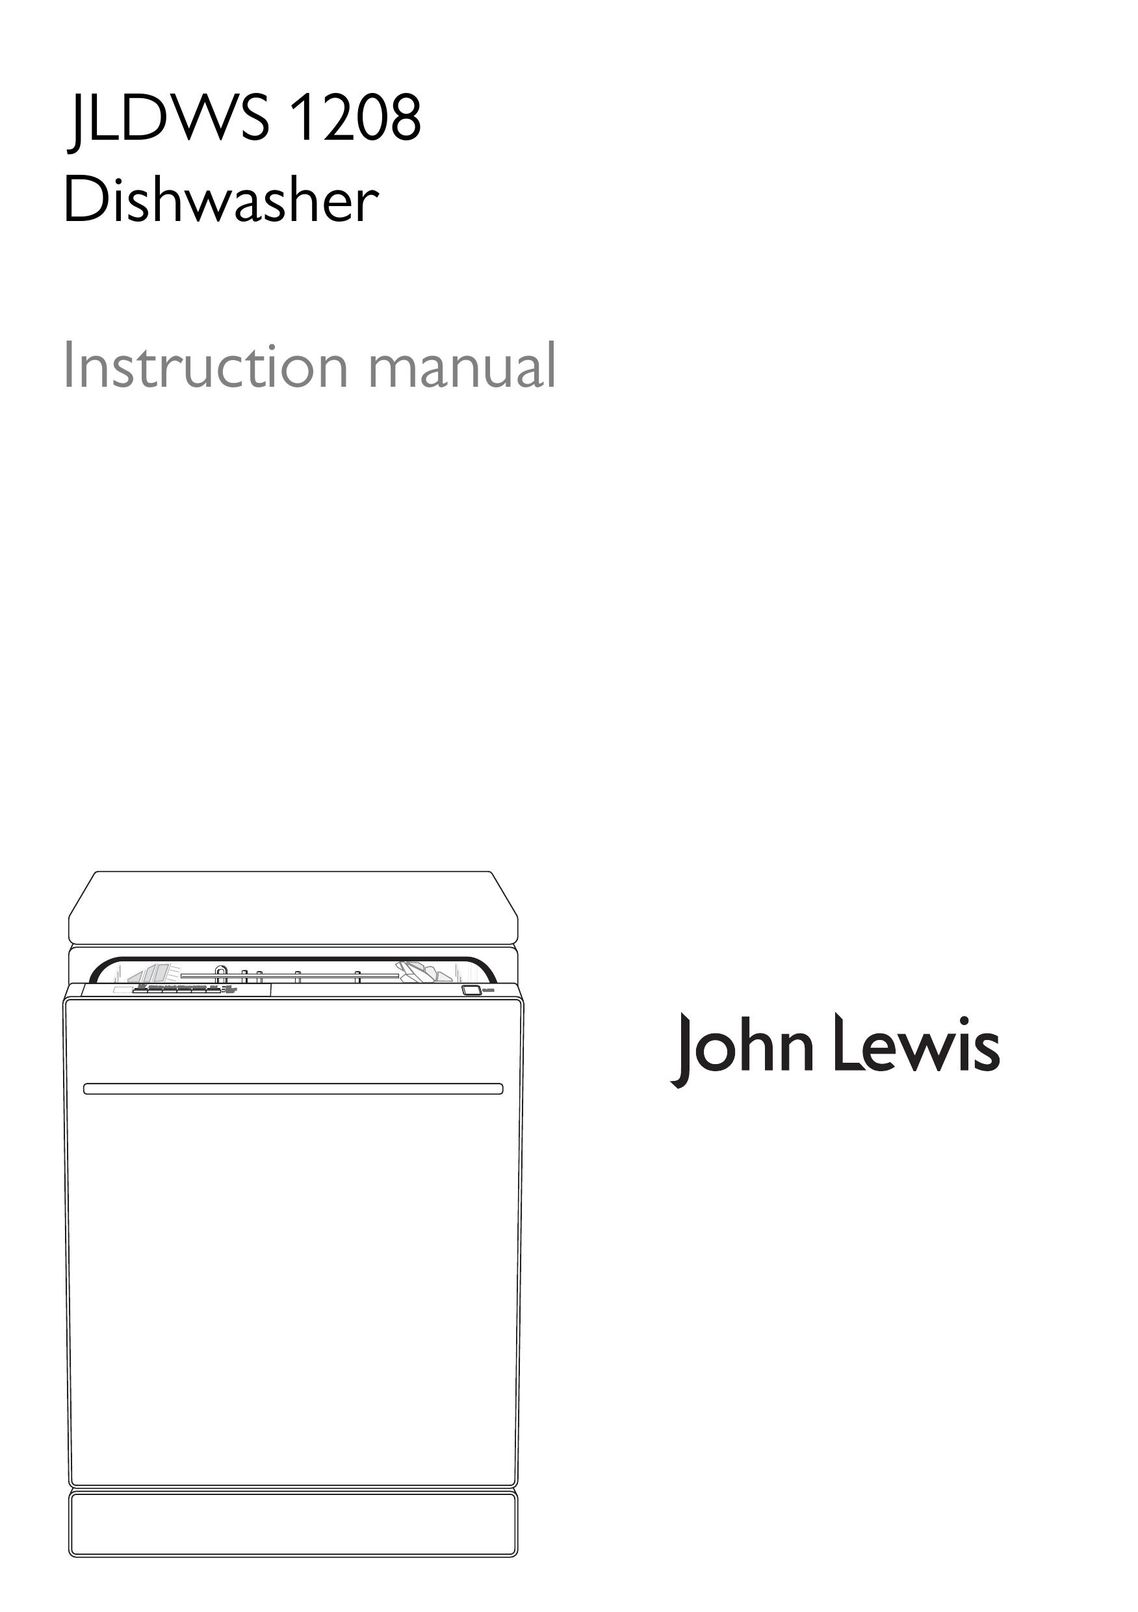 John Lewis JLDWS1208 Dishwasher User Manual